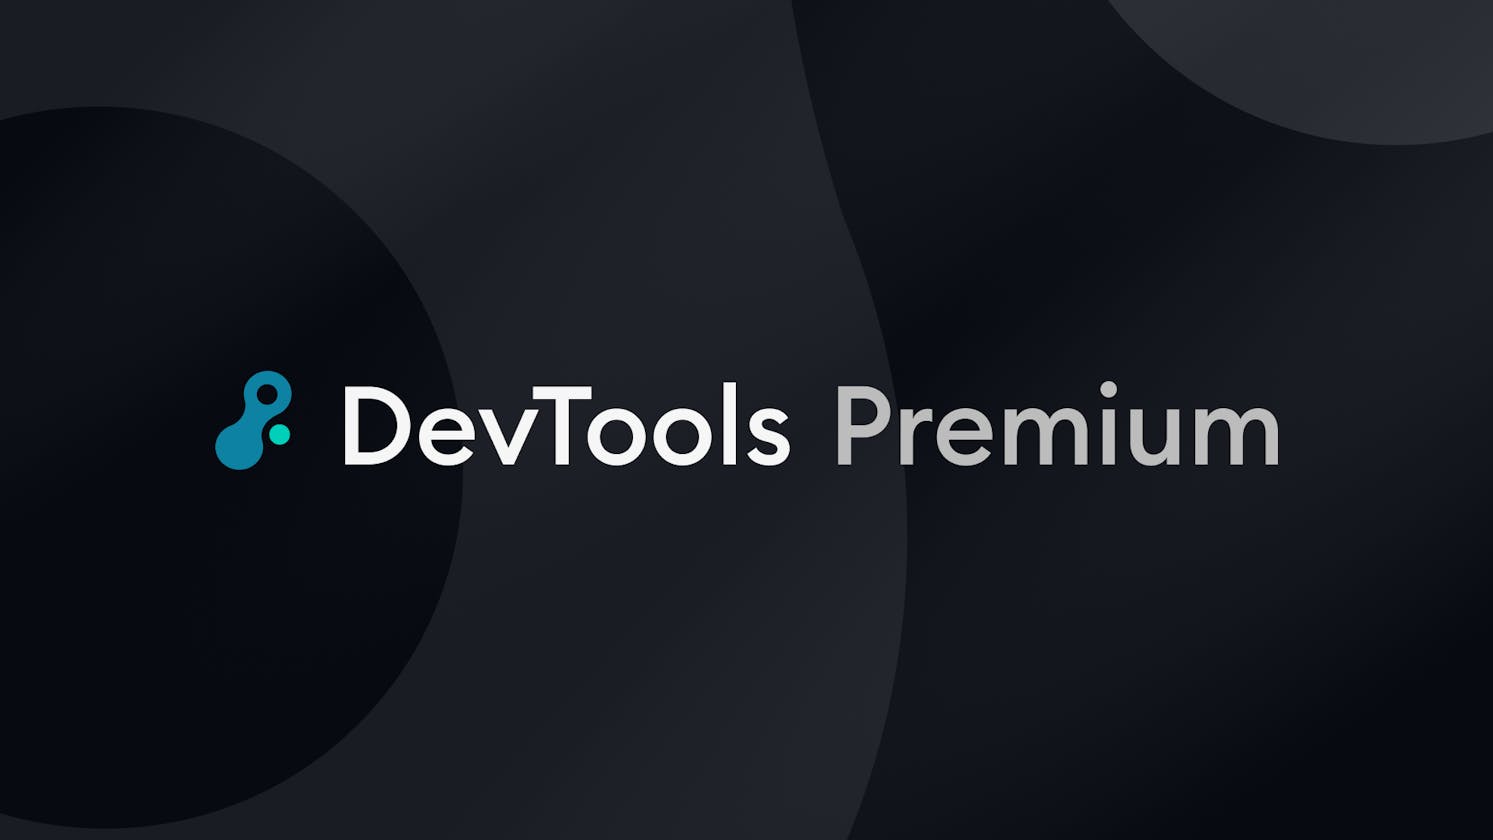 Announcing DevTools Premium